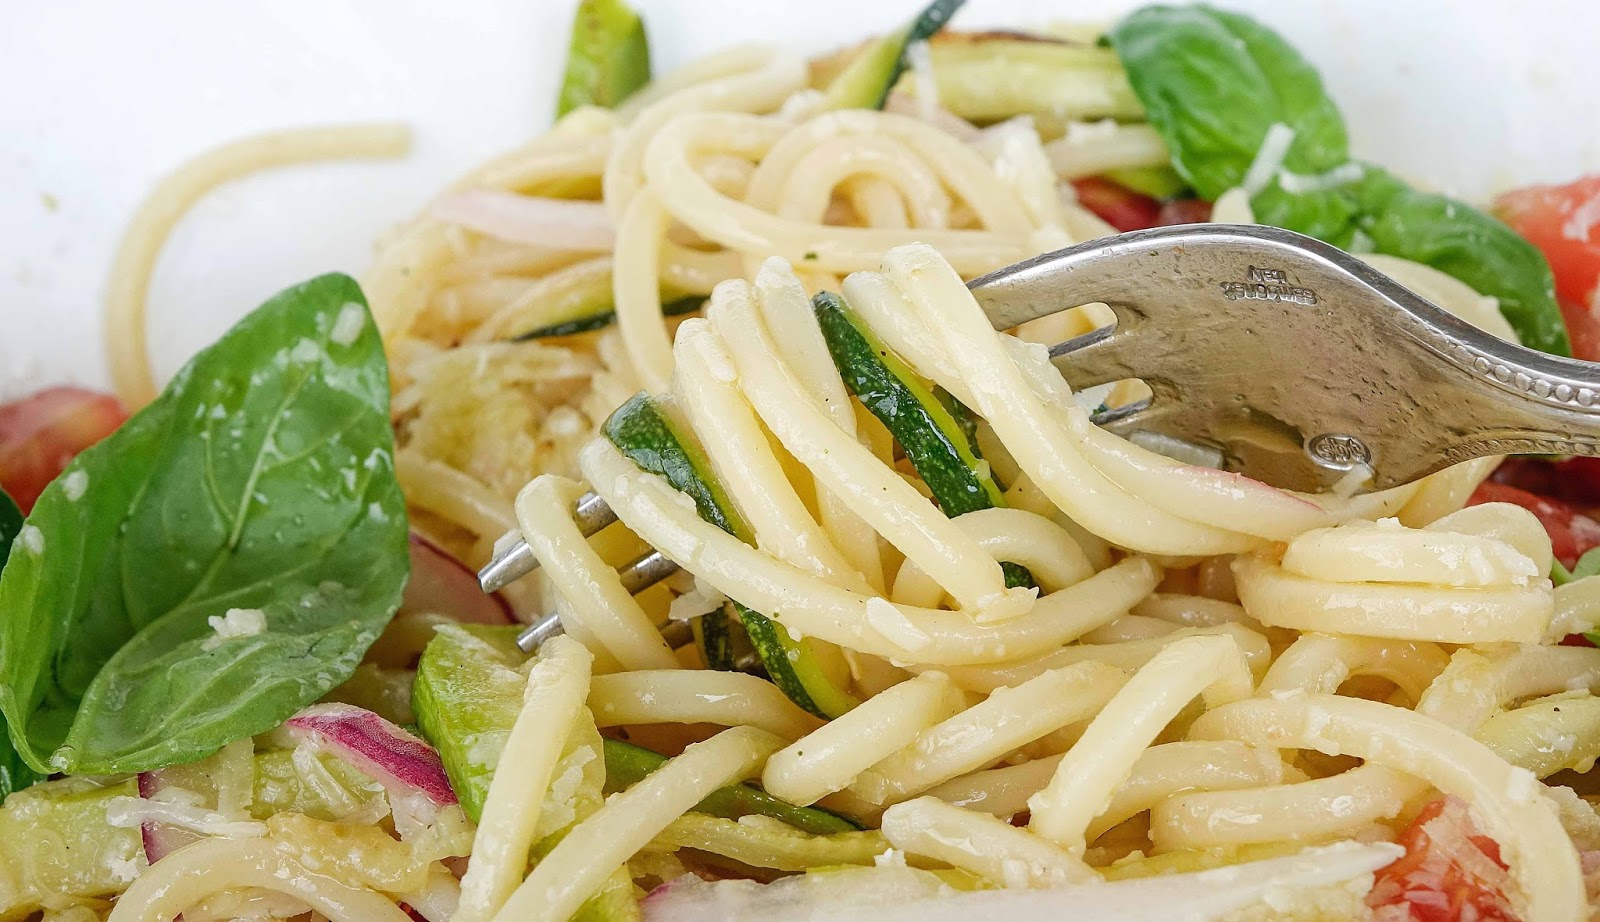 stuttgartcooking: Lauwarmer Spaghetti-Salat mit Tomaten und Zucchini